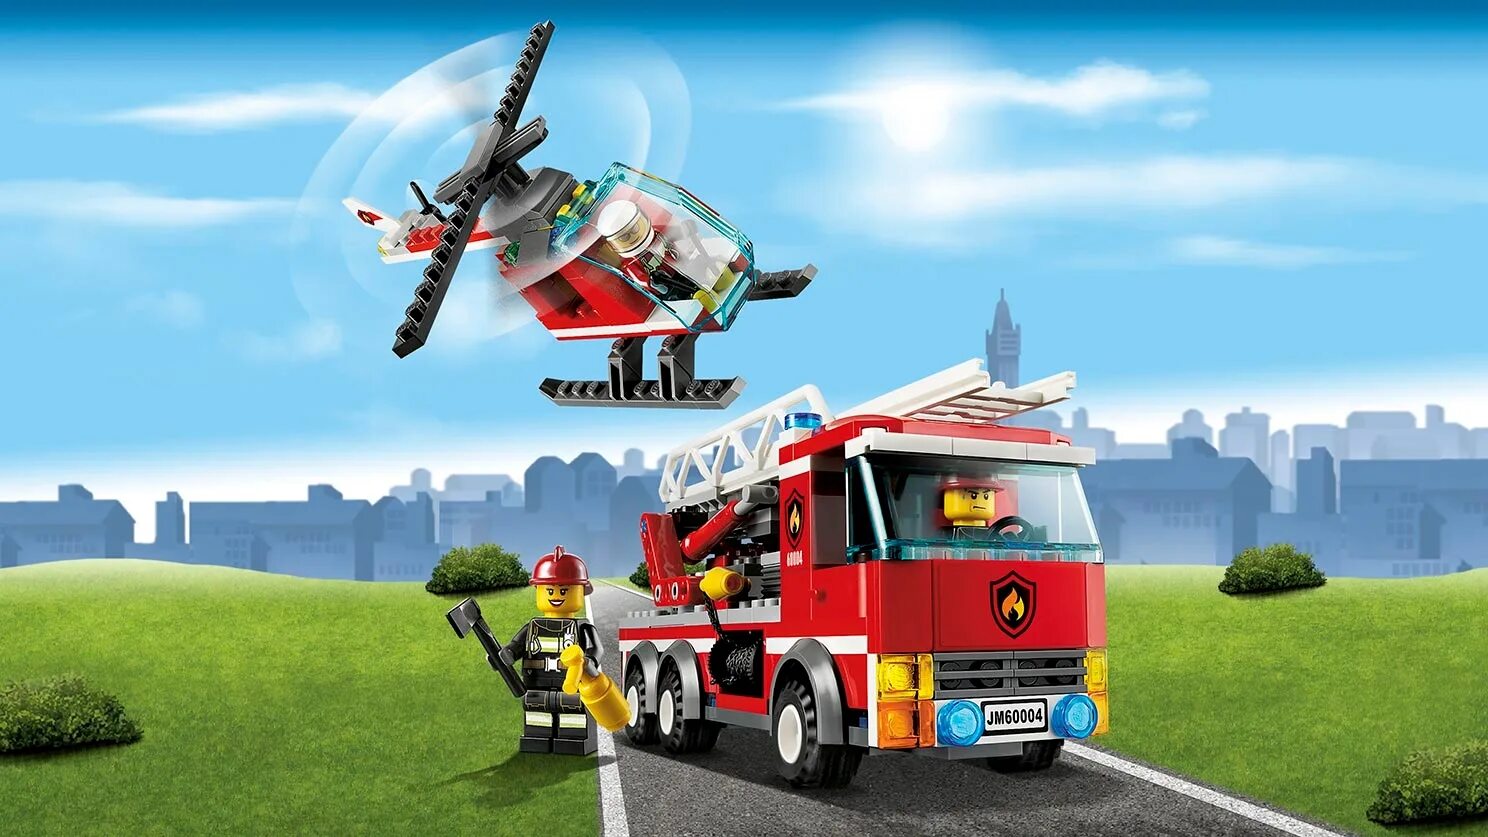 Сити пожарная. LEGO City 60004. Лего Сити 60004. LEGO City 60004 пожарная часть. LEGO 60004.